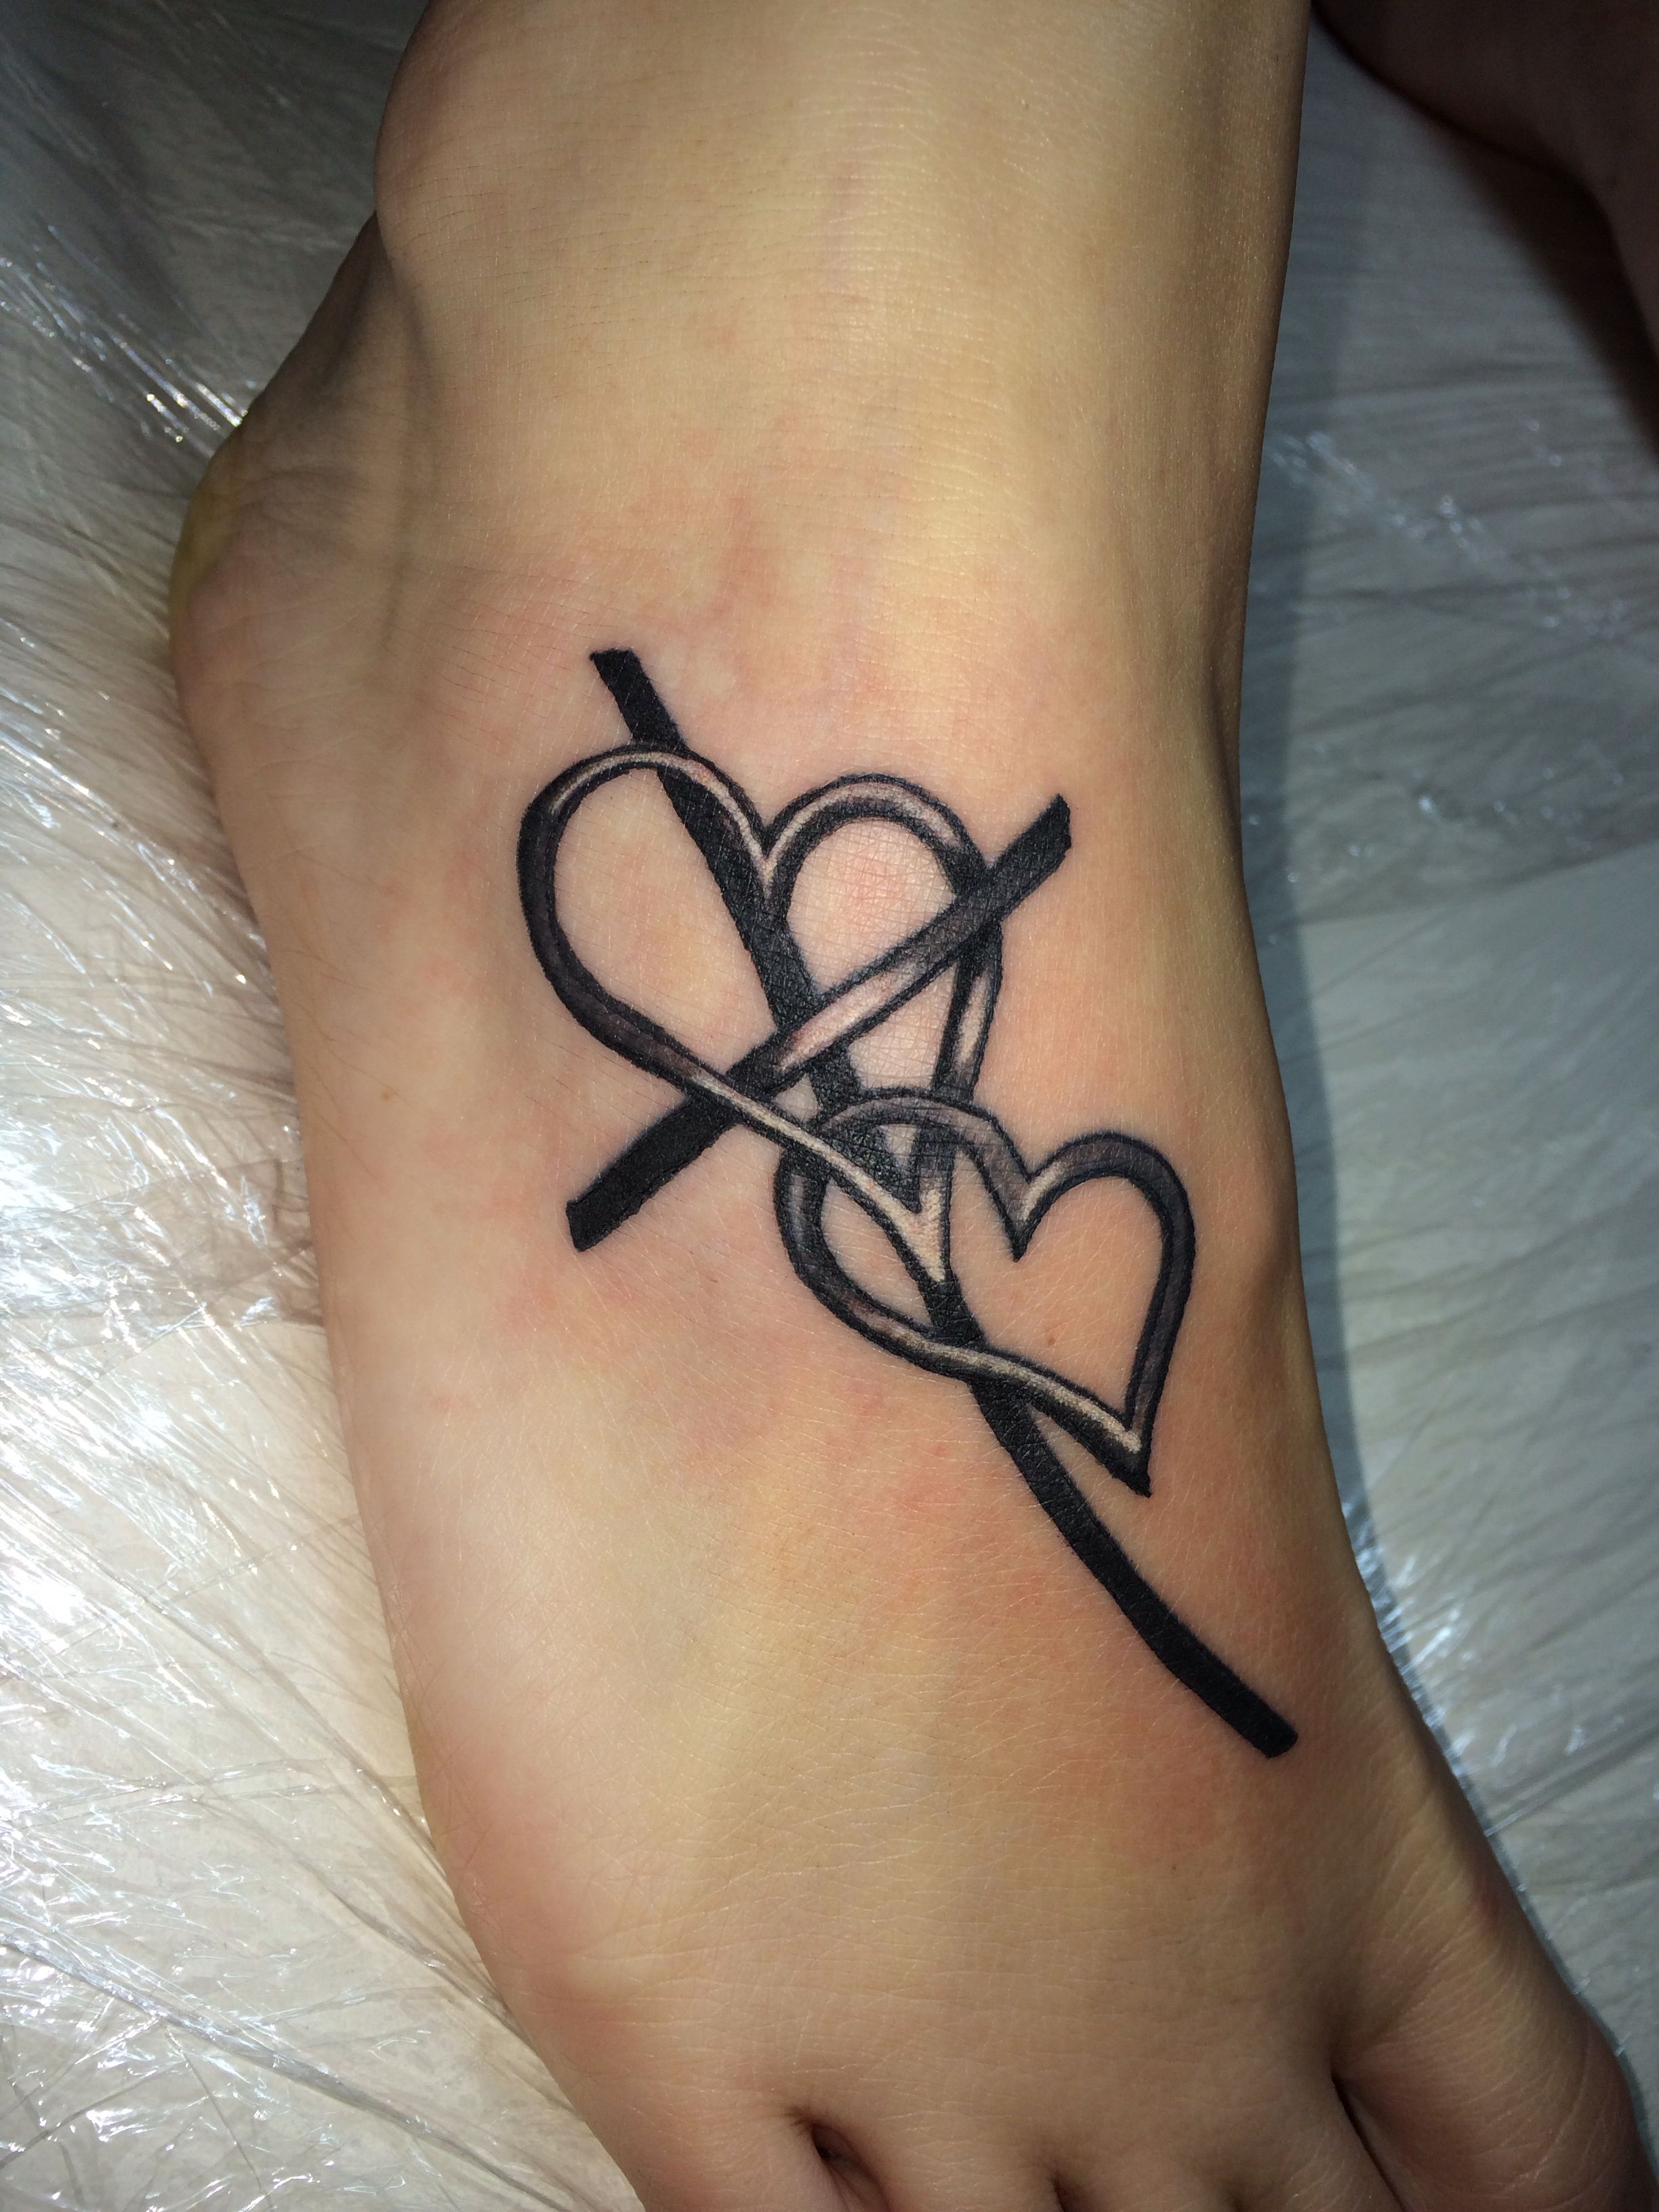 Cross Tattoo Cross With Heart Tattoo Foot Tattoo Tattoos within size 2448 X 3264